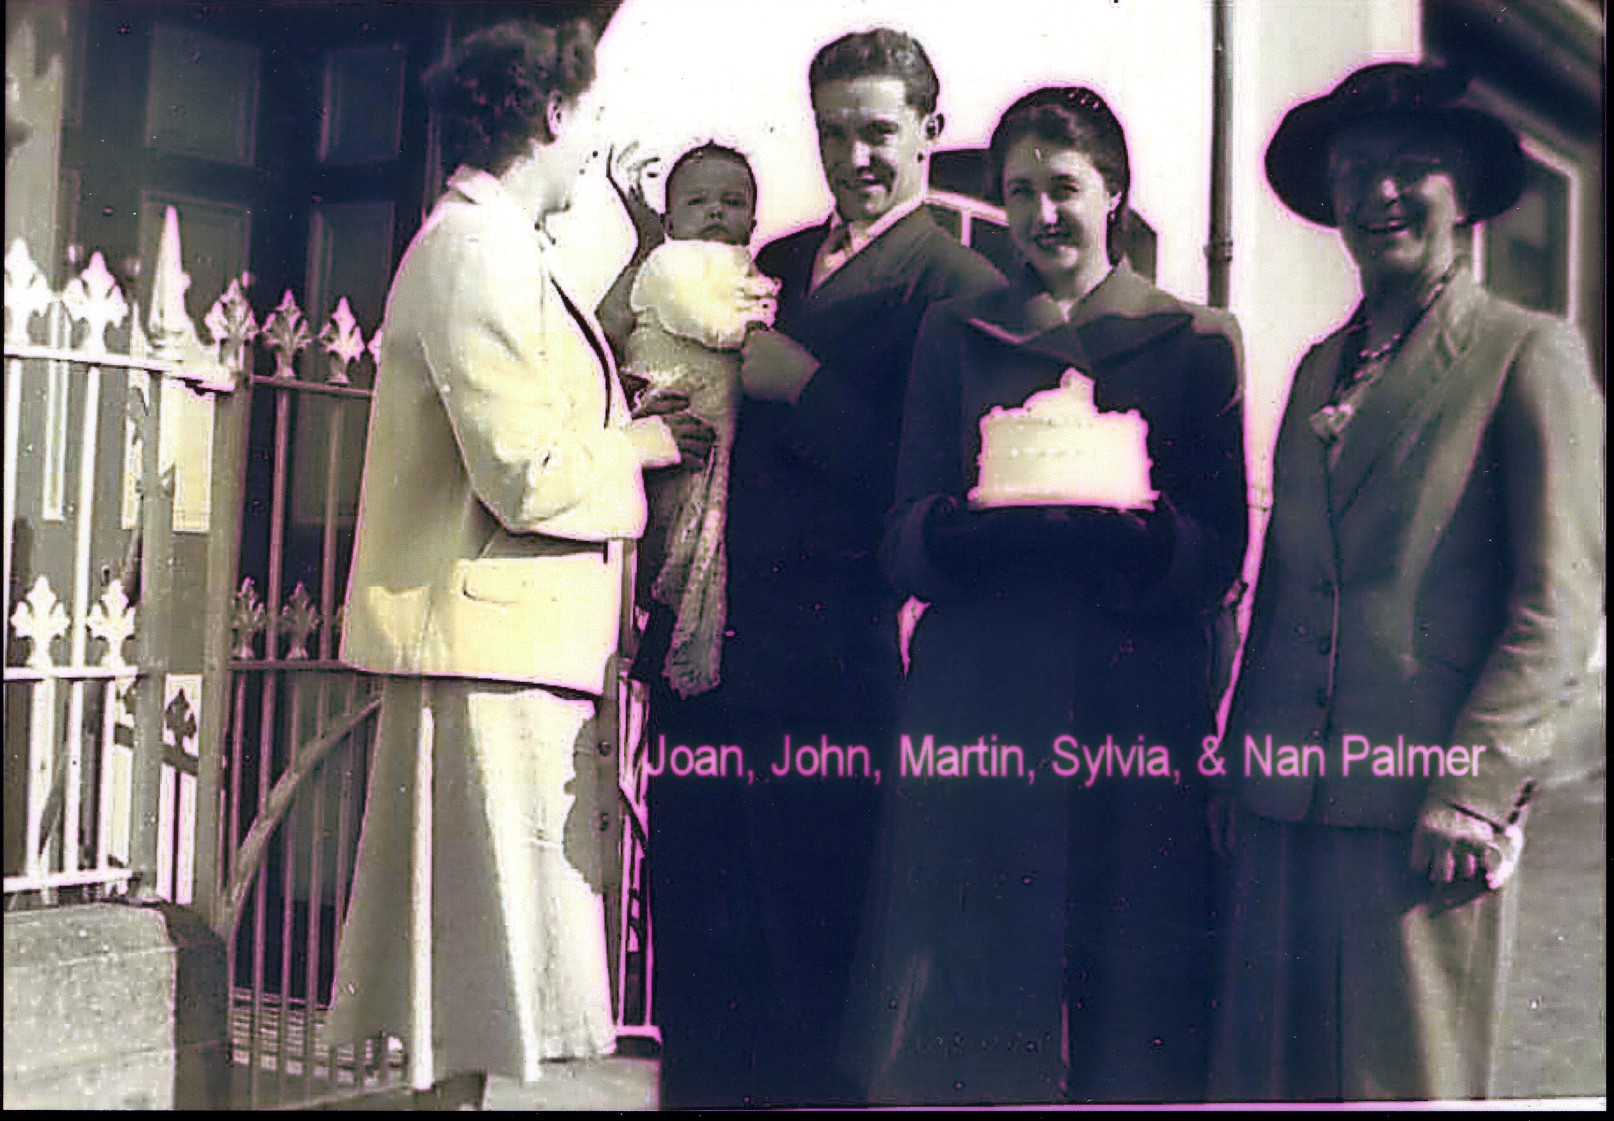 Joan, John, Martin, Sylvia and Nan Palmer